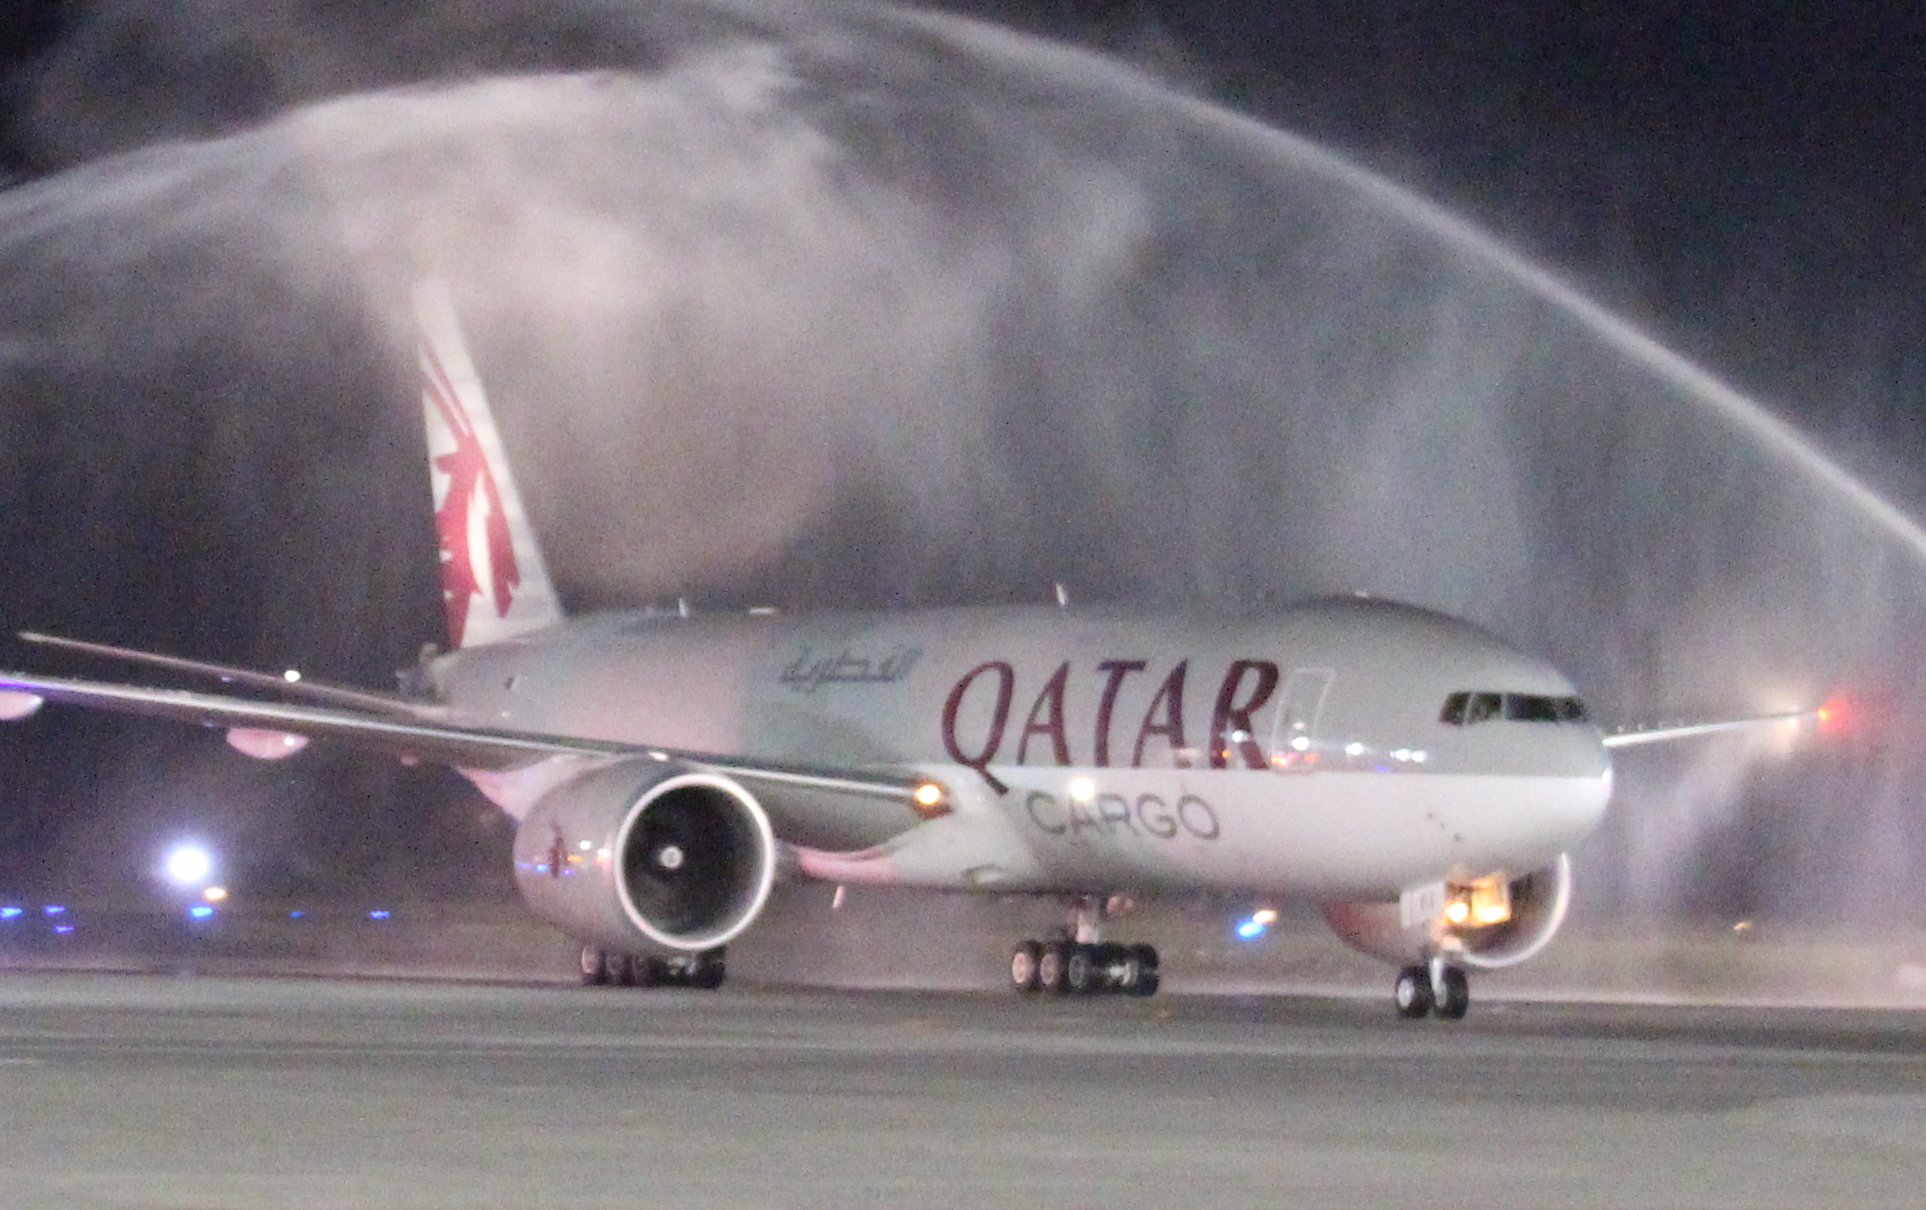 Qatar Airways Cargo Boeing 777F. Click to enlarge.